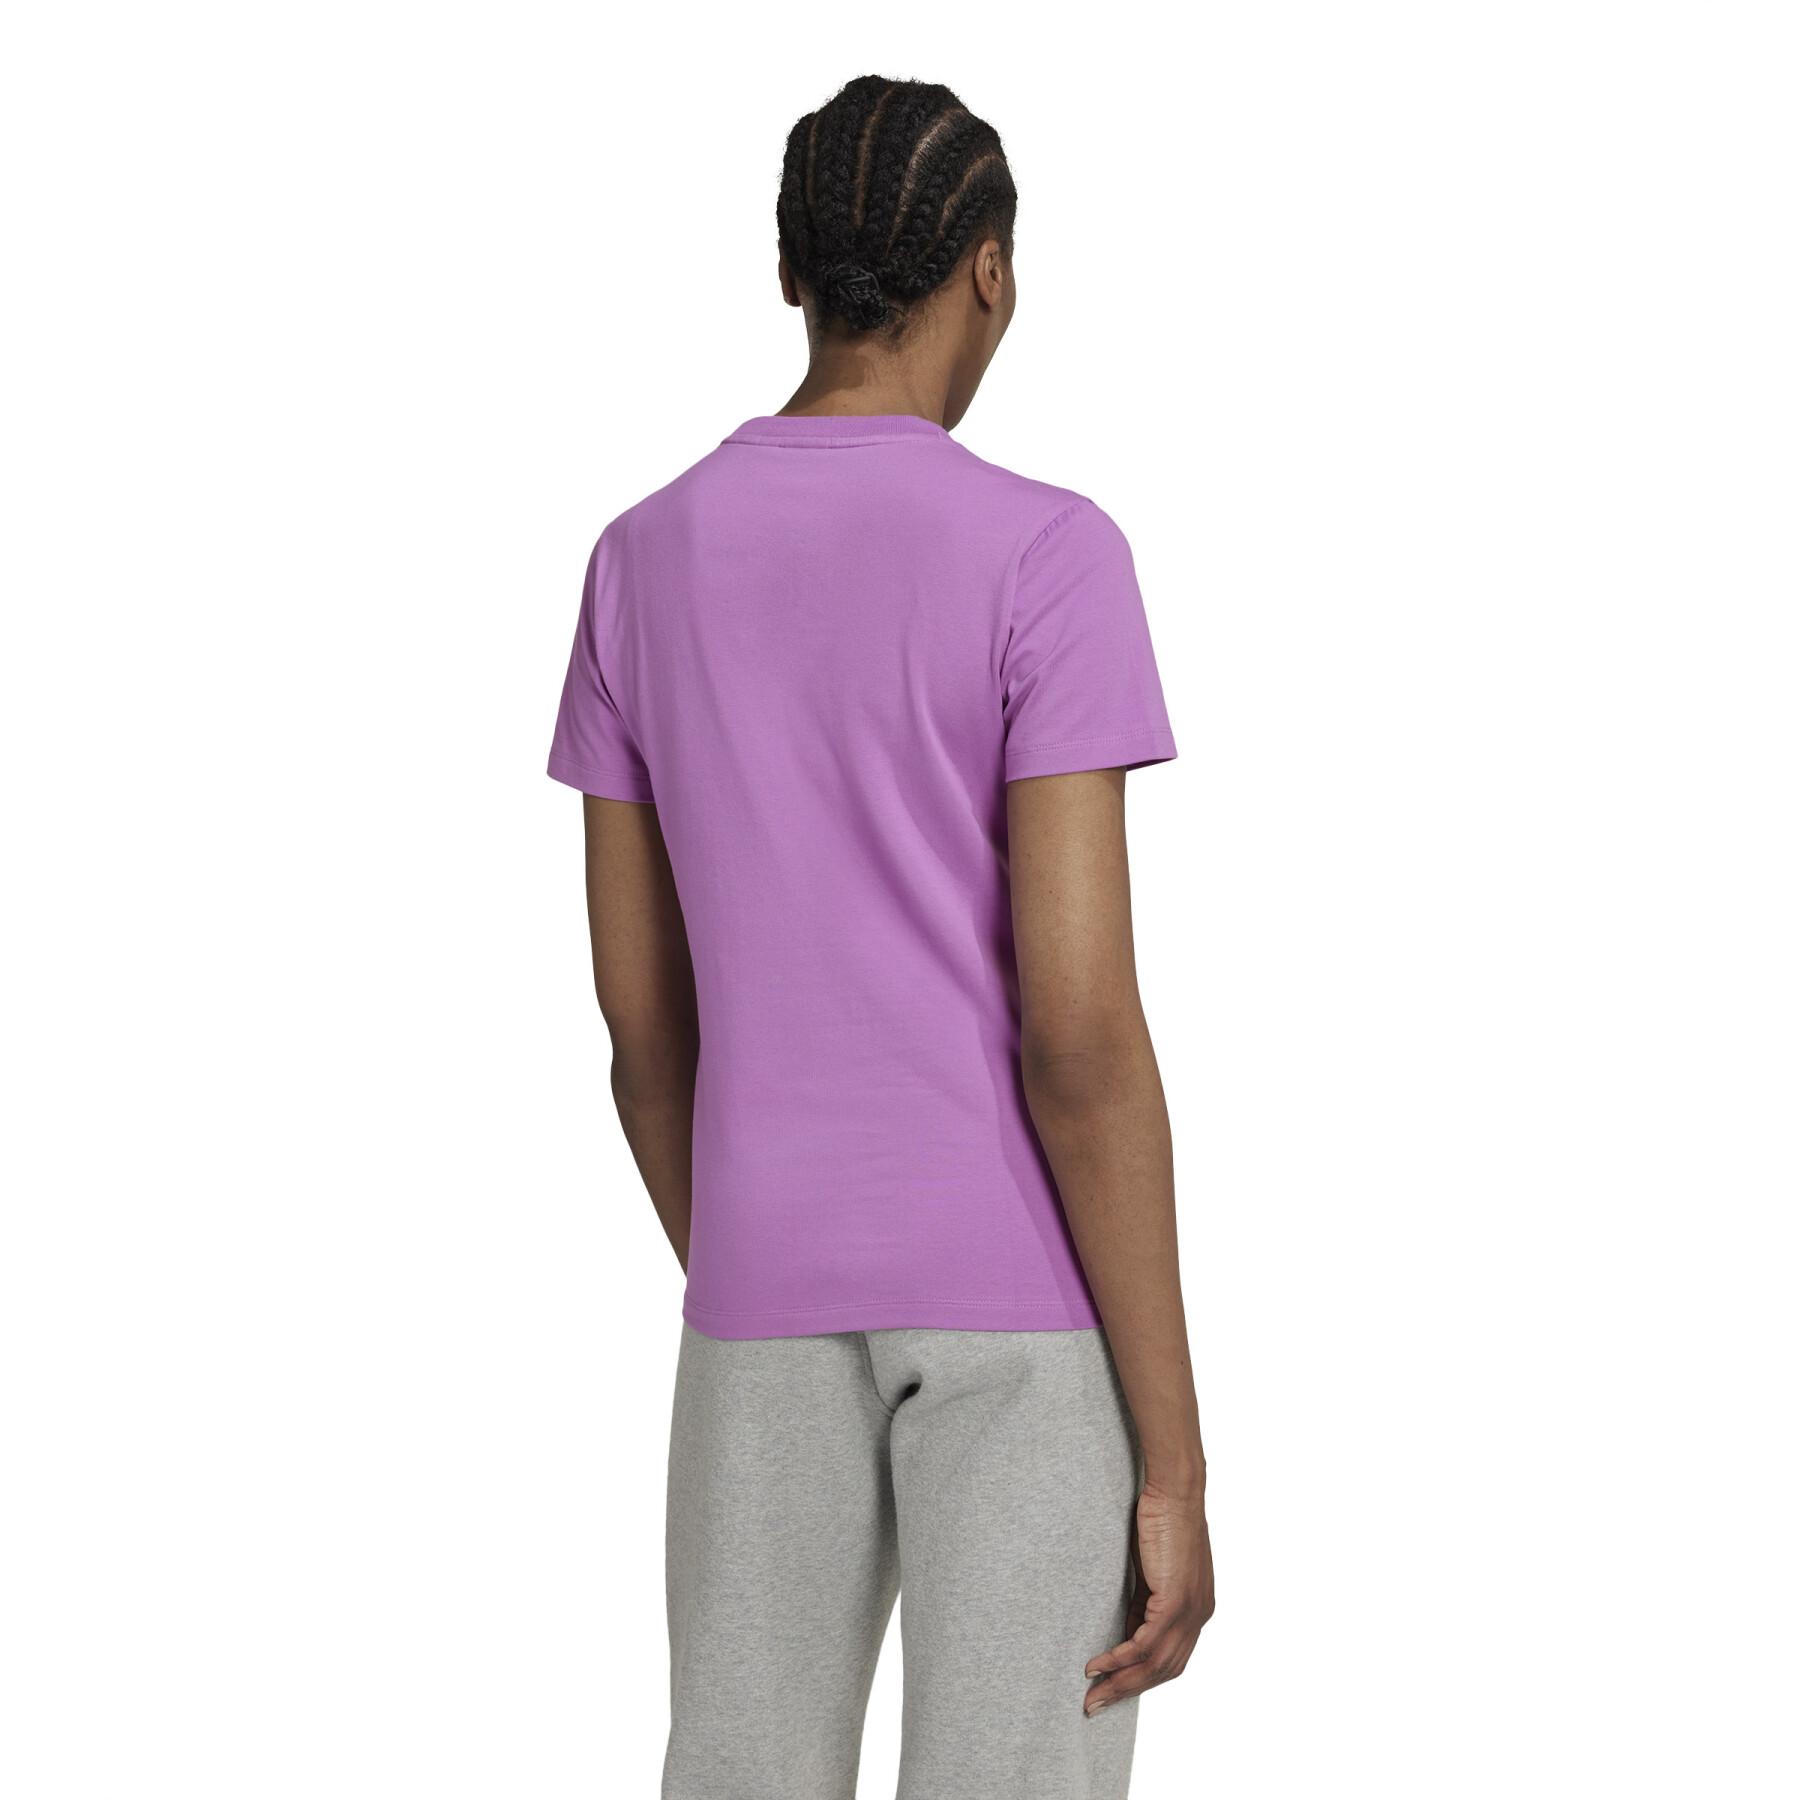 T-shirt för kvinnor adidas Originals Trefoil Adicolor Classics